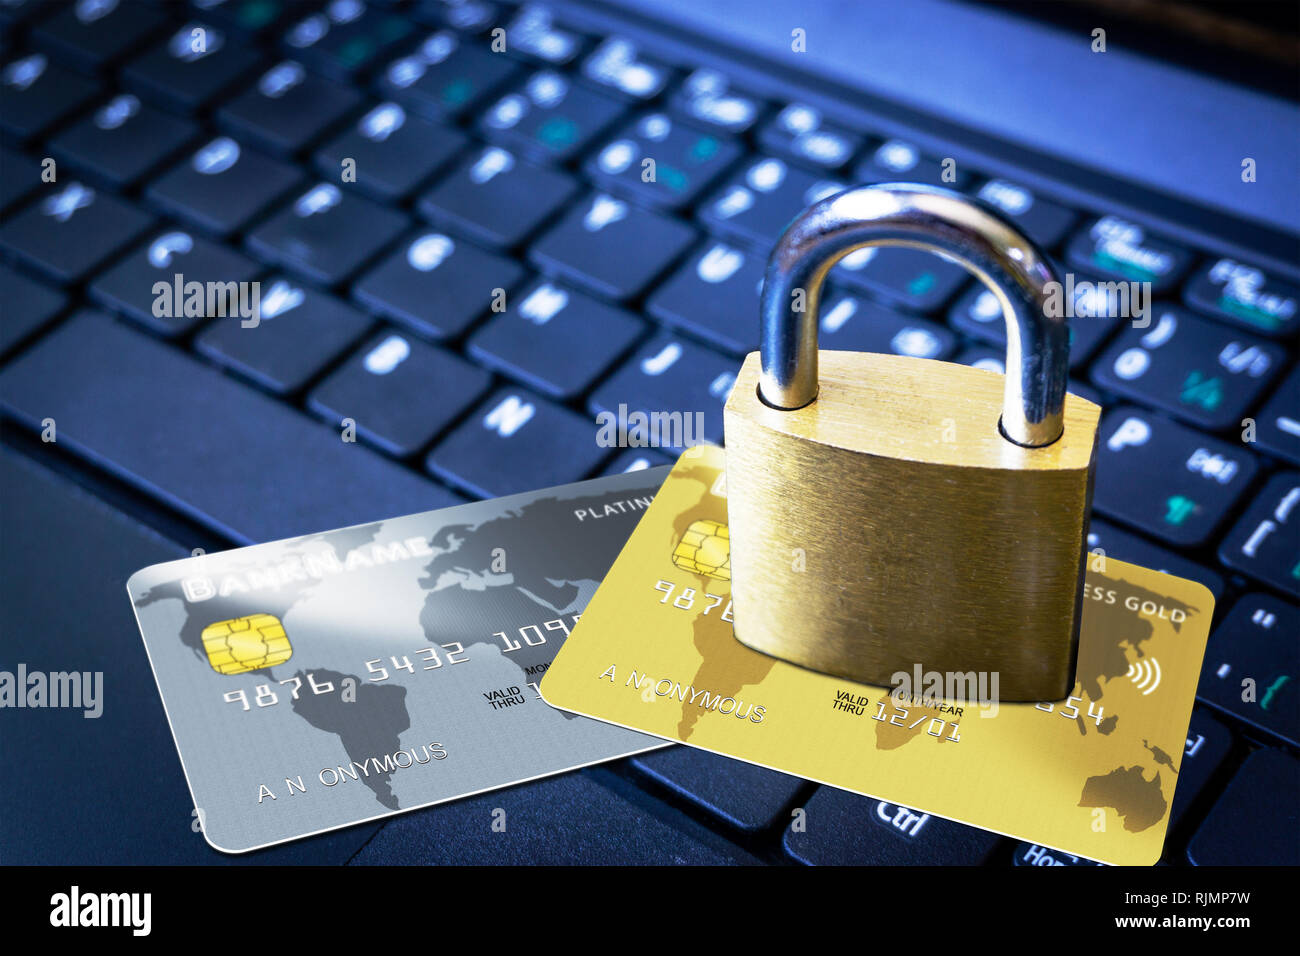 Goldene Vorhängeschloss auf fiktiven Kreditkarten auf der Computertastatur. Konzept der Internet Security, Datenschutz, Computerkriminalität Verhinderung für online Sh Stockfoto